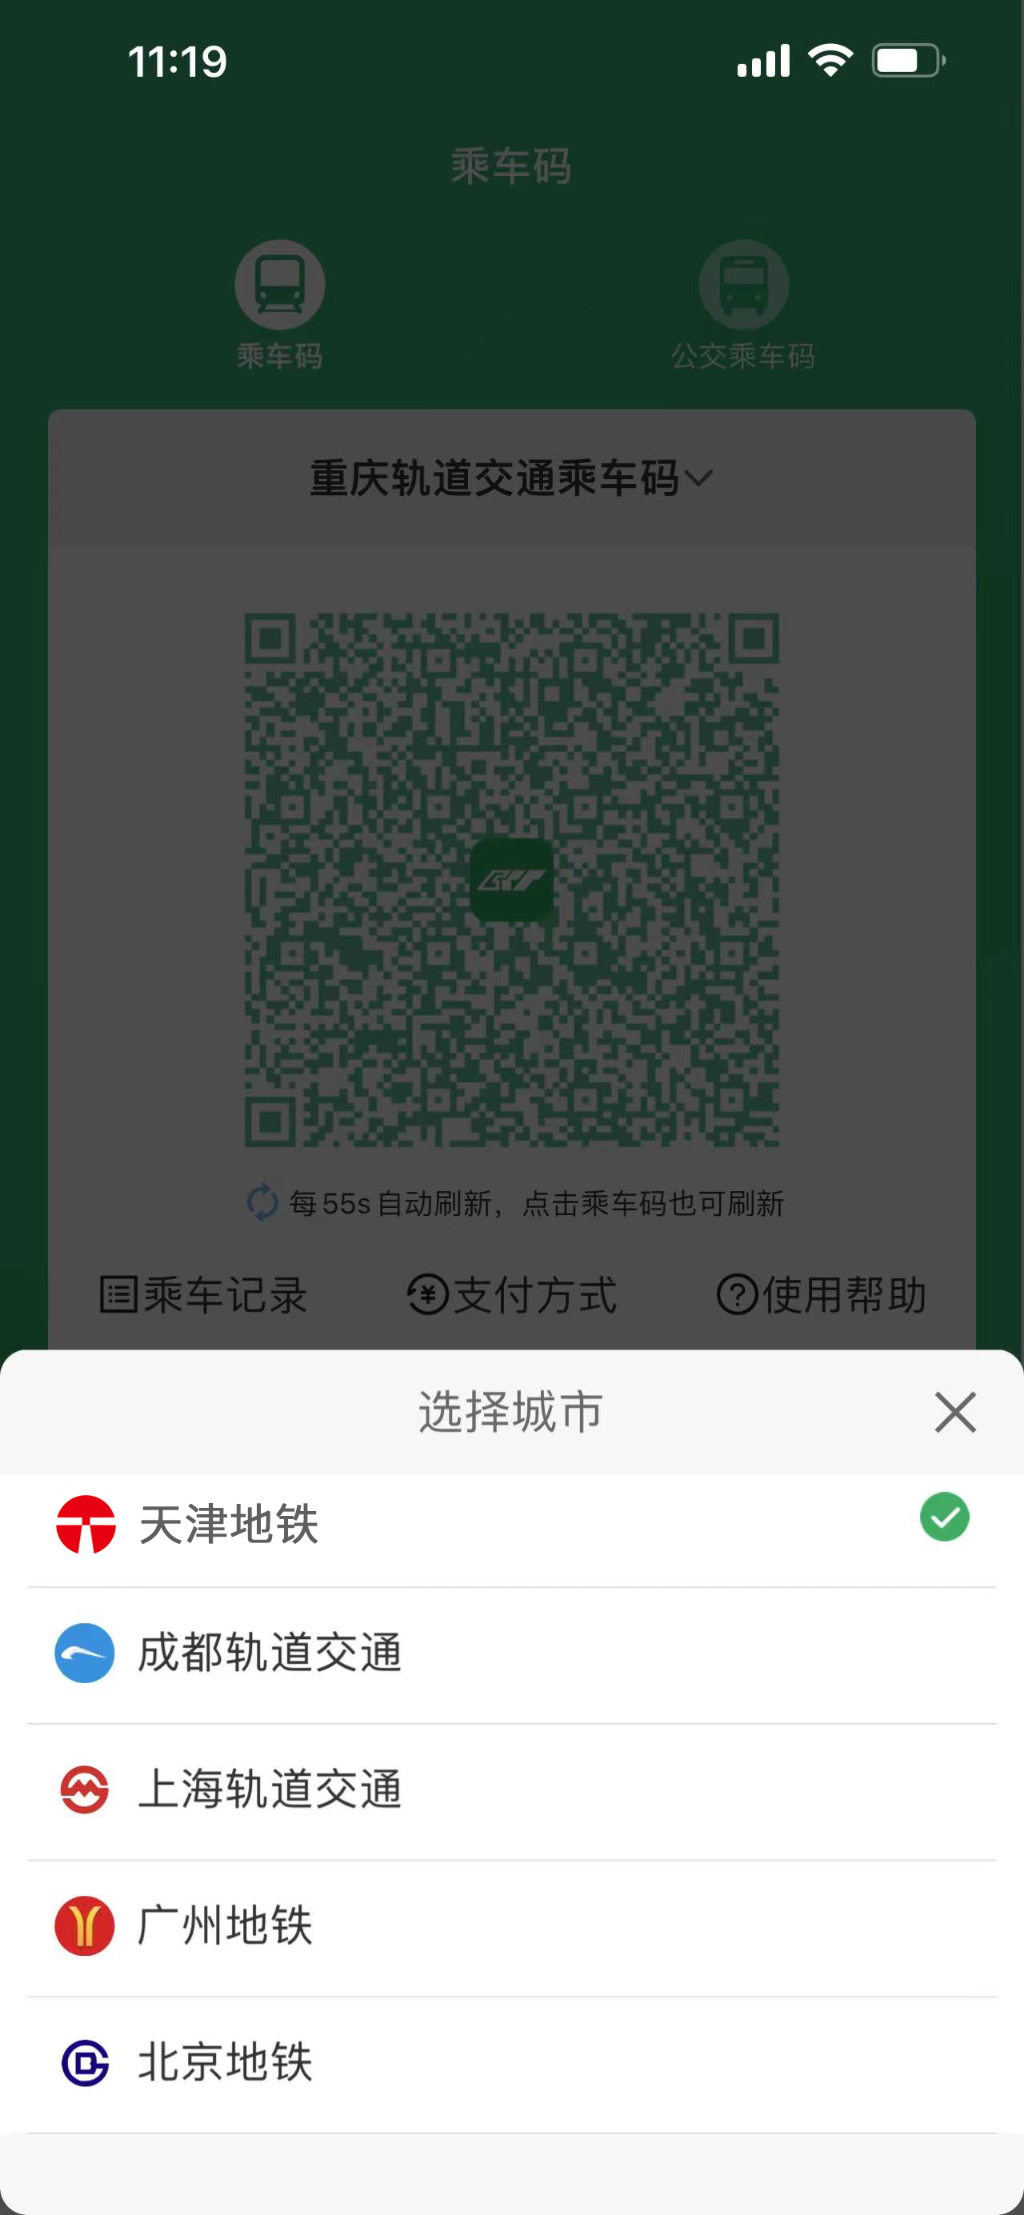 【轉載】重慶軌道交通乘車二維碼與北京、天津等五座城市實現互聯互通